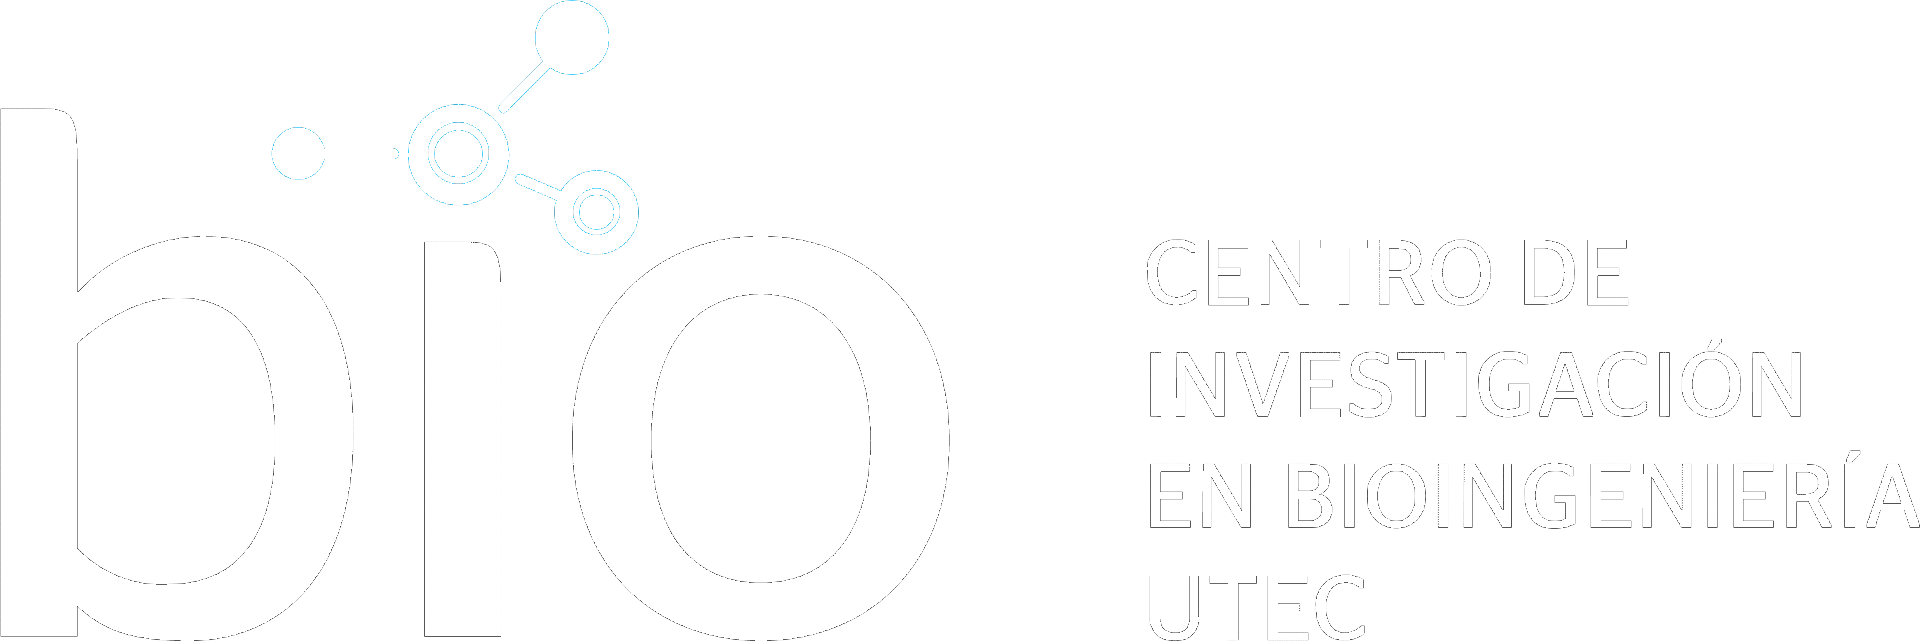 Centro BIO logo